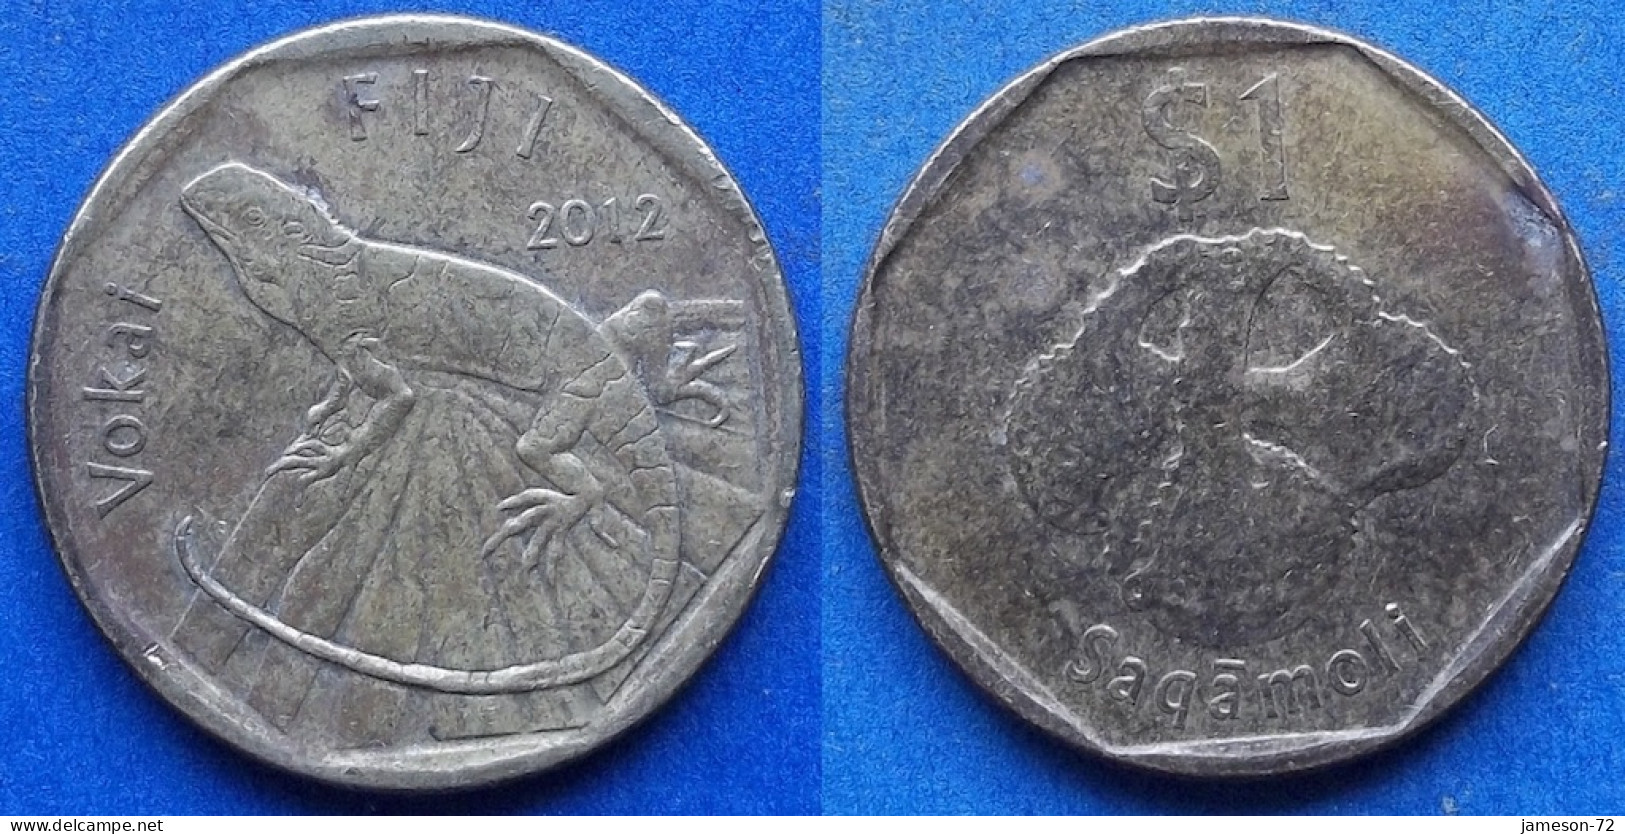 FIJI - 1 Dollar 2012 "Banded Iguana" KM# 336 Elizabeth II Decimal Coinage (1971-2022) - Edelweiss Coins - Fiji